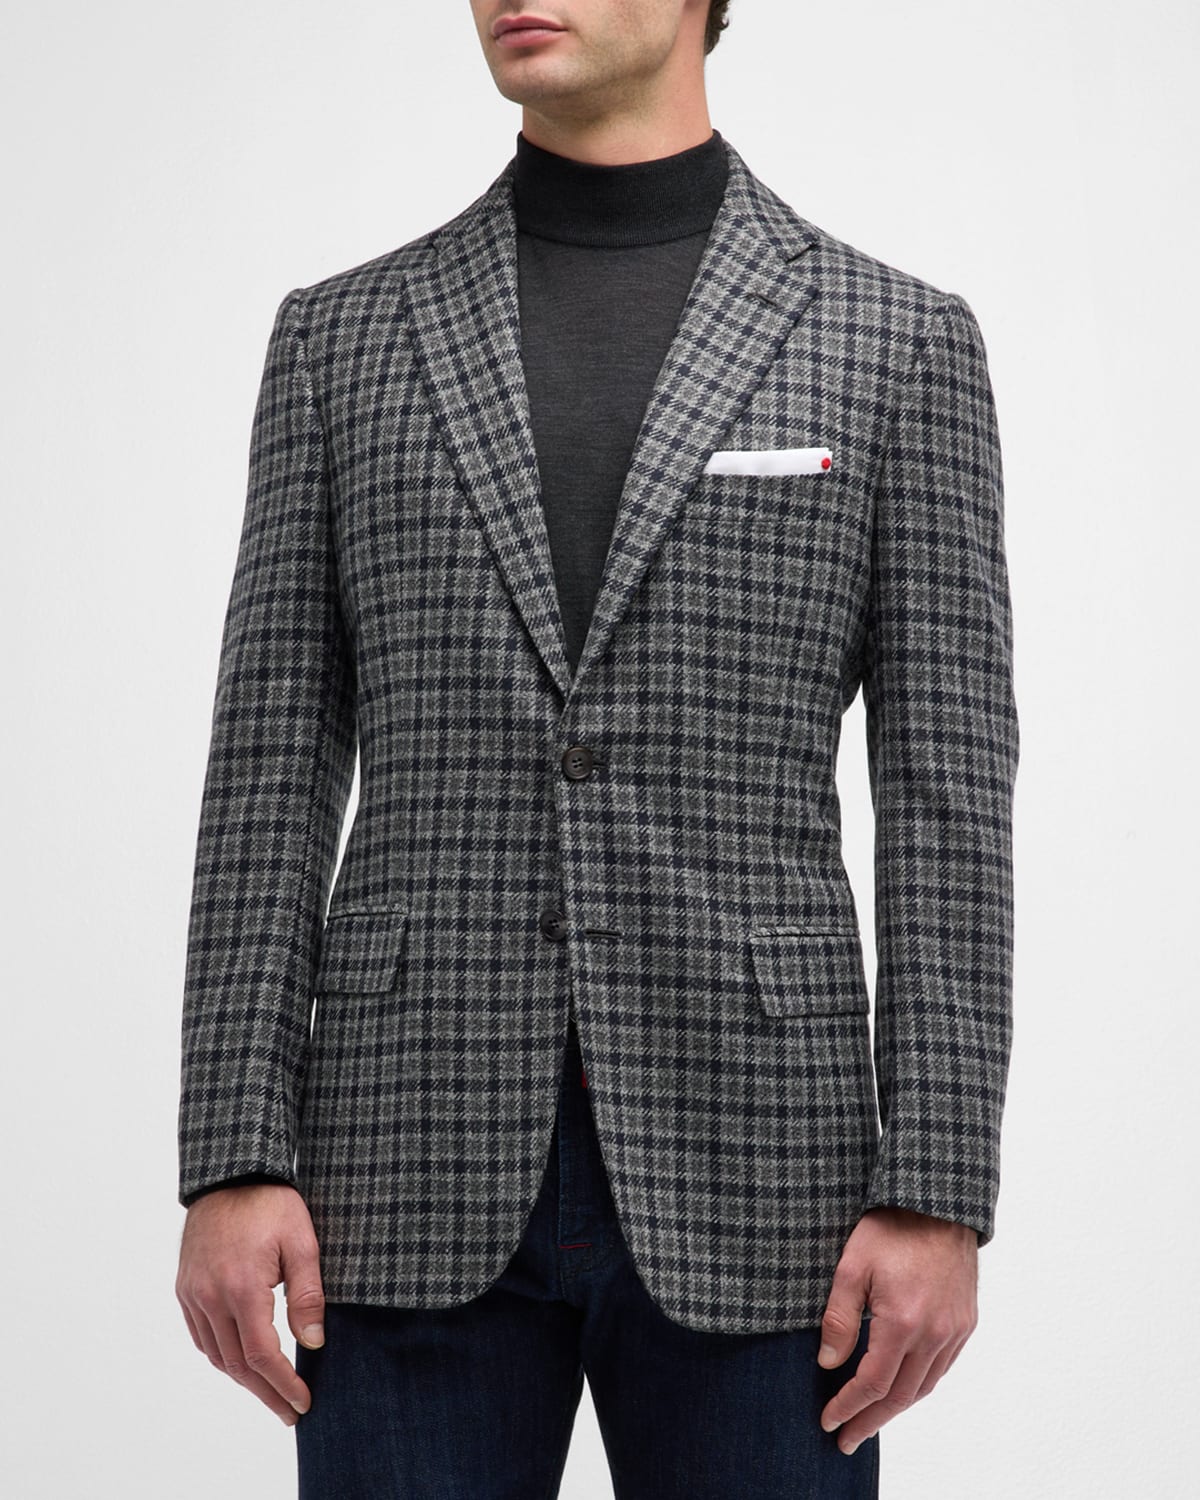 Kiton Men's Cashmere Check Sport Coat In Gray